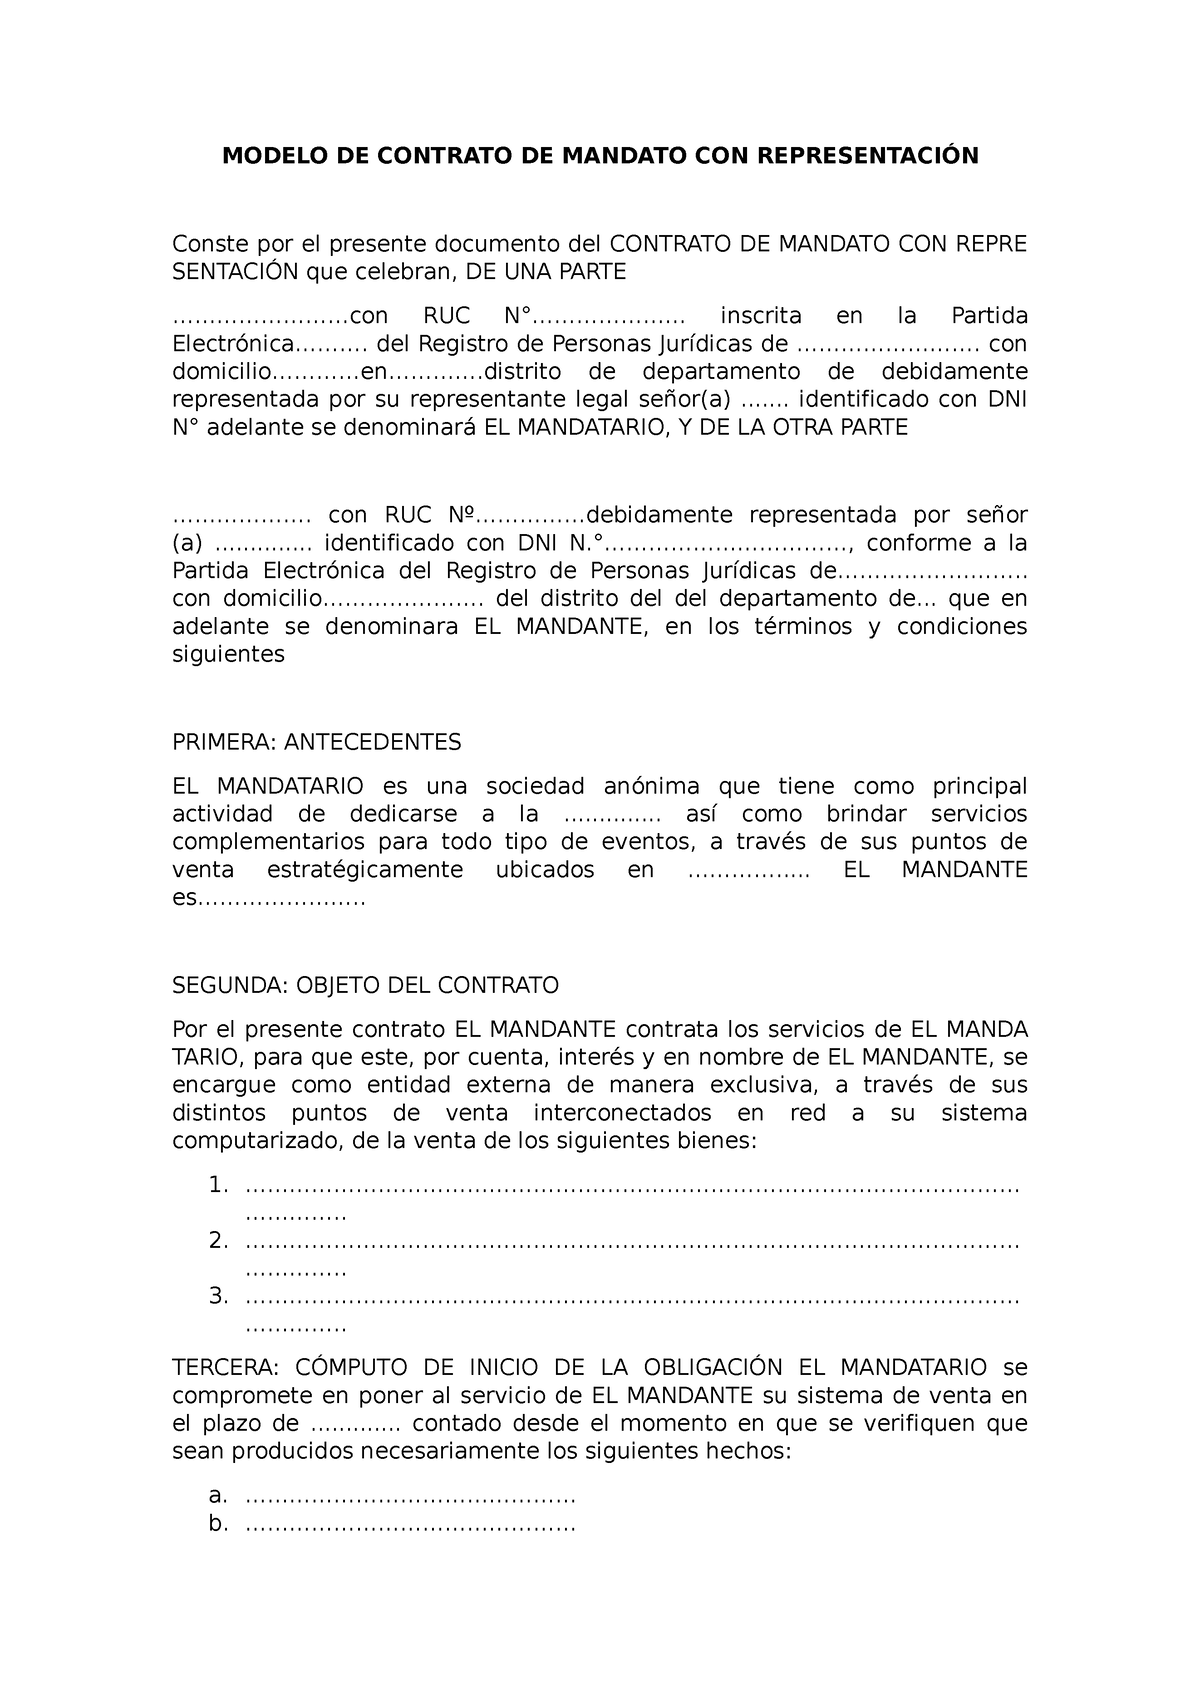 Modelo de contrato de mandato con representacion - MODELO DE CONTRATO ...